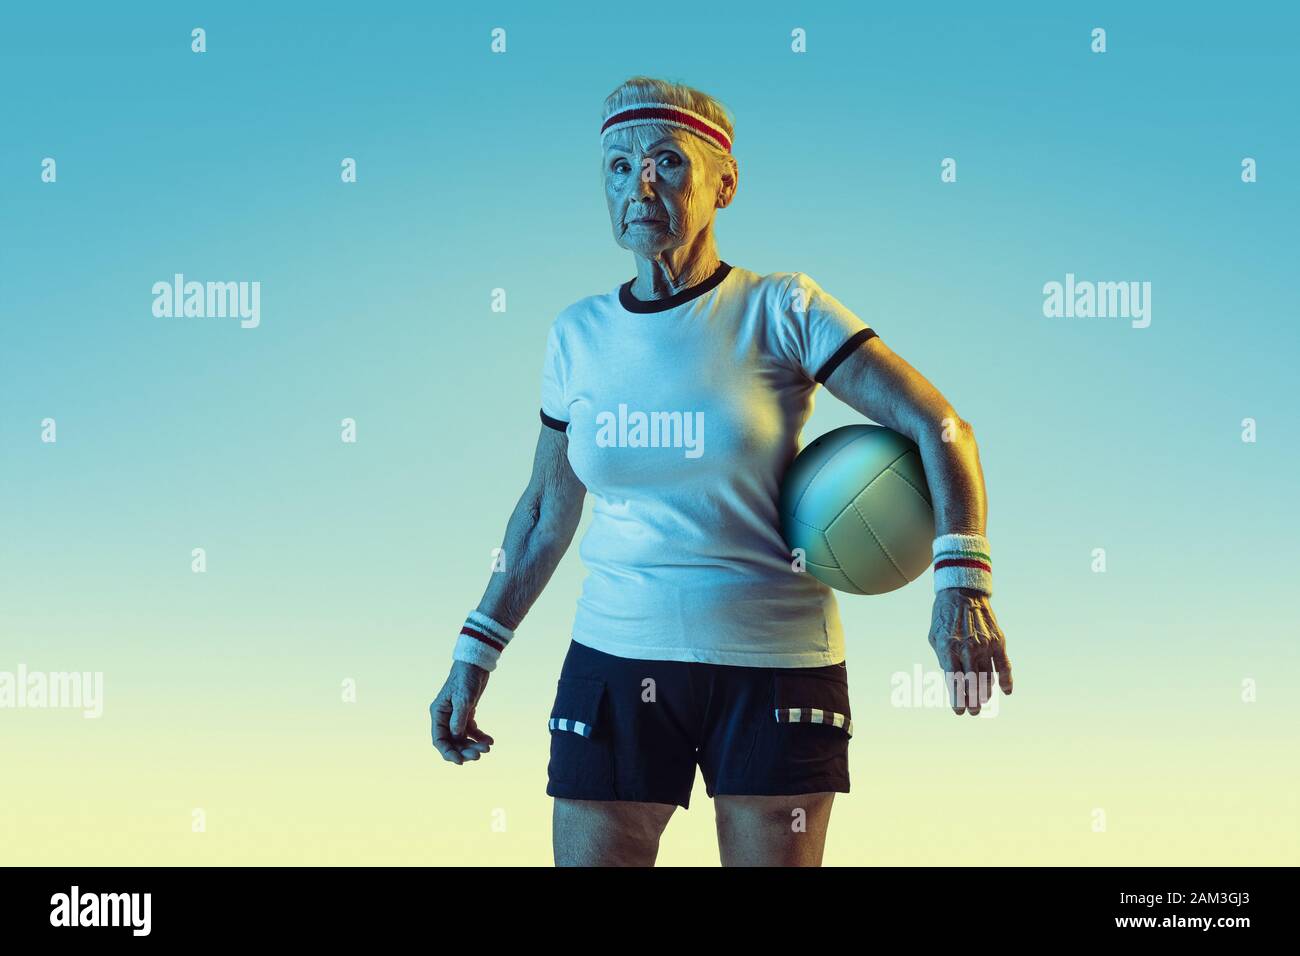 Ältere Frau in Sportbekleidung Ausbildung im Volleyball auf  Verlaufshintergrund, Neonlicht. Weibliche Model in der großen Form bleibt  aktiv. Konzept für Sport, Aktivität, Bewegung, Wohlbefinden, Vertrauen.  Copyspace Stockfotografie - Alamy